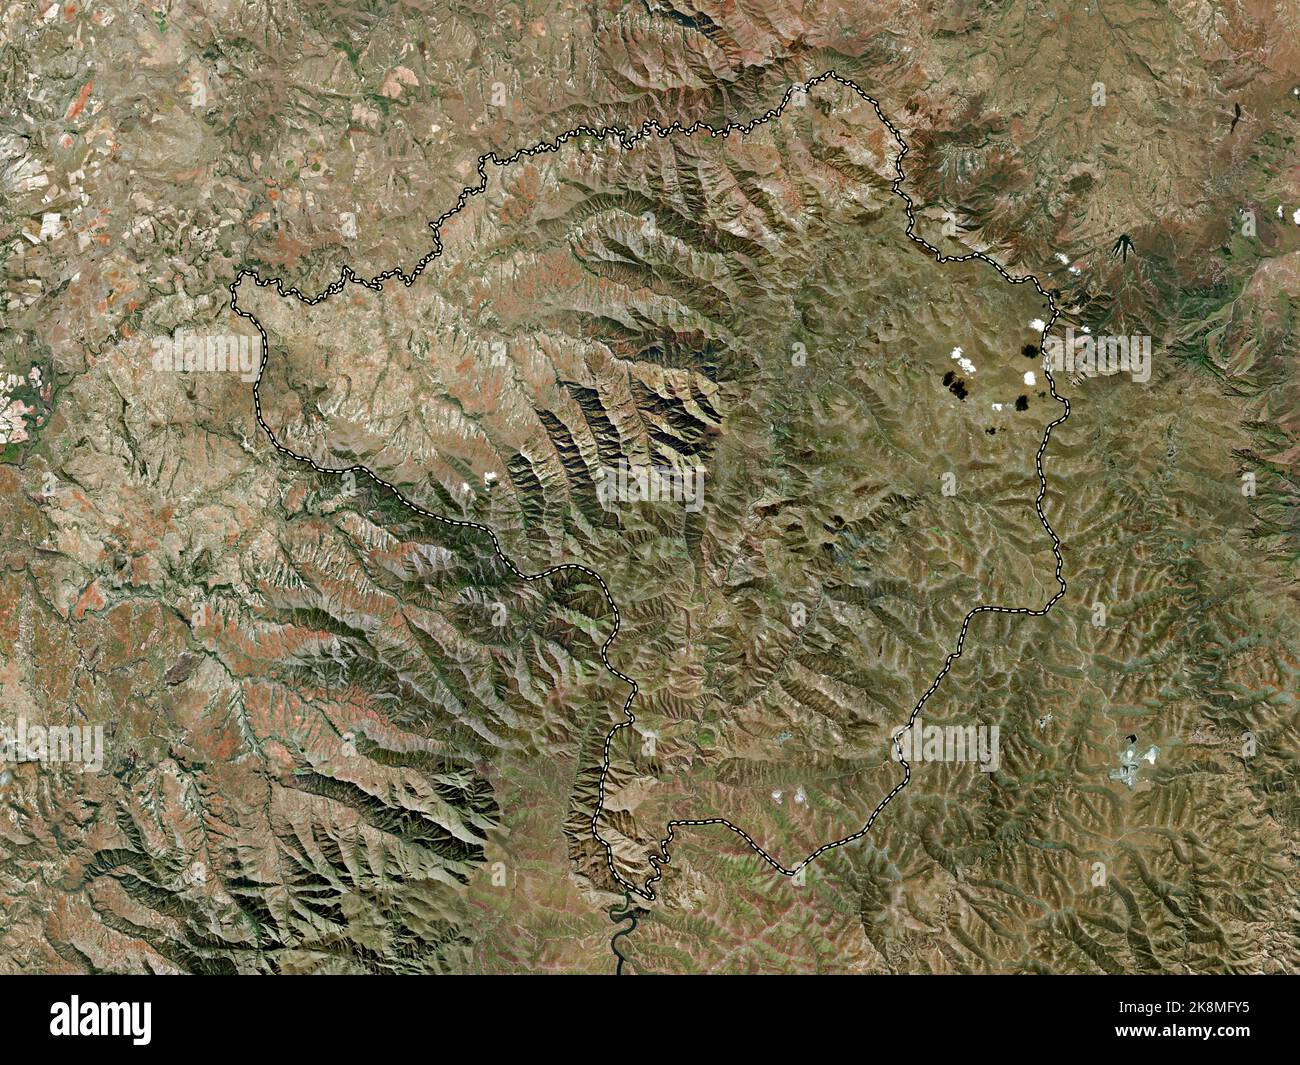 Butha-Buthe, distrito de Lesotho. Mapa satelital de alta resolución Foto de stock